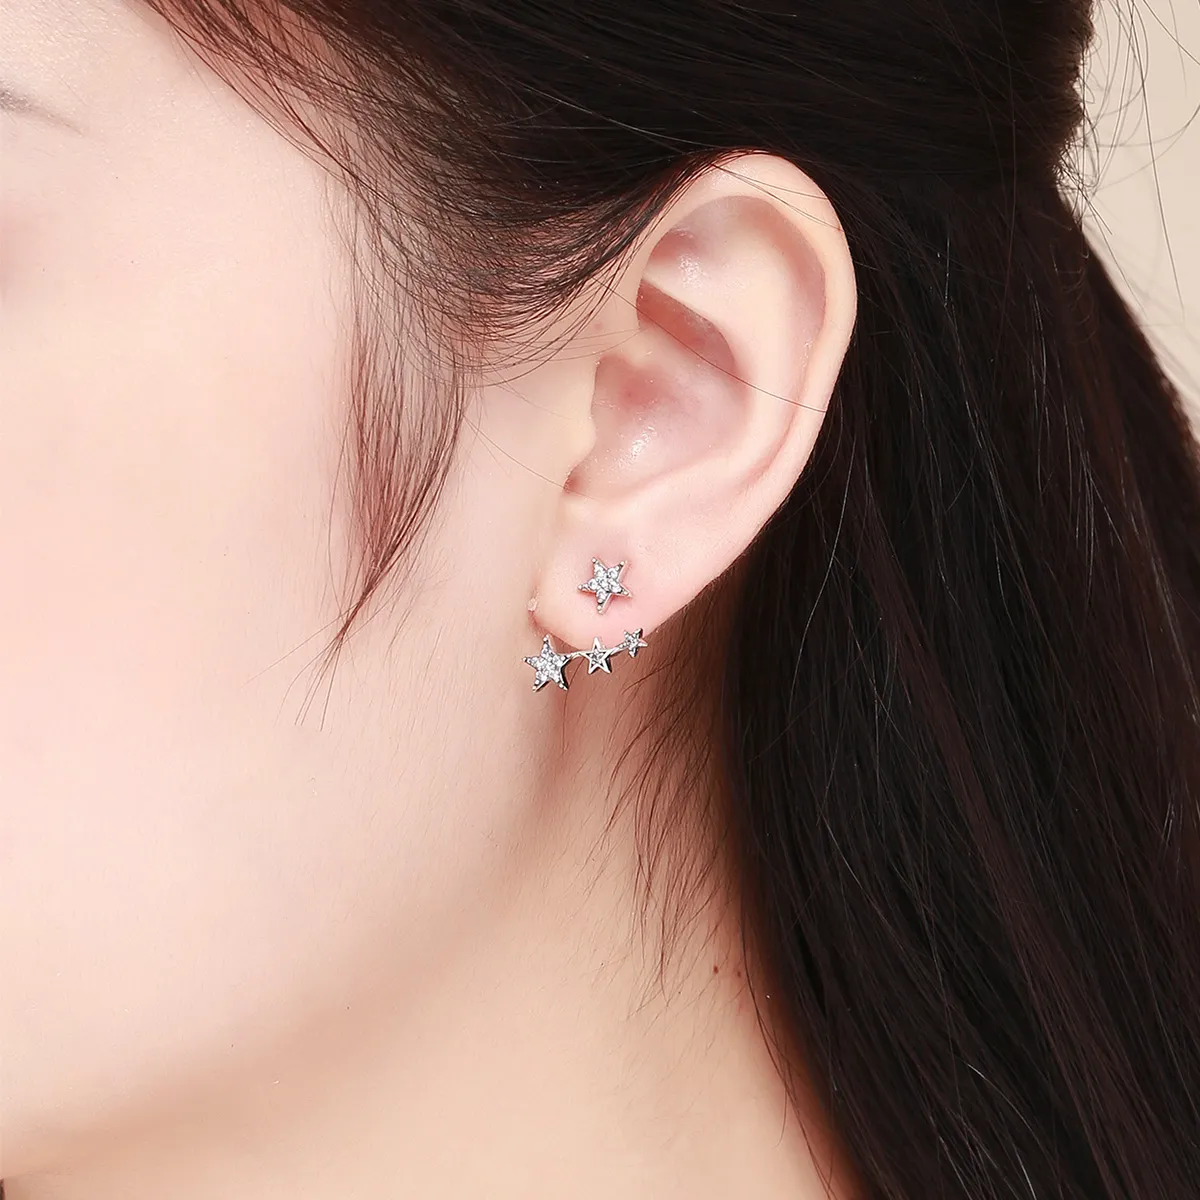 Pandora Style Silver Stars Stud Earrings - SCE448